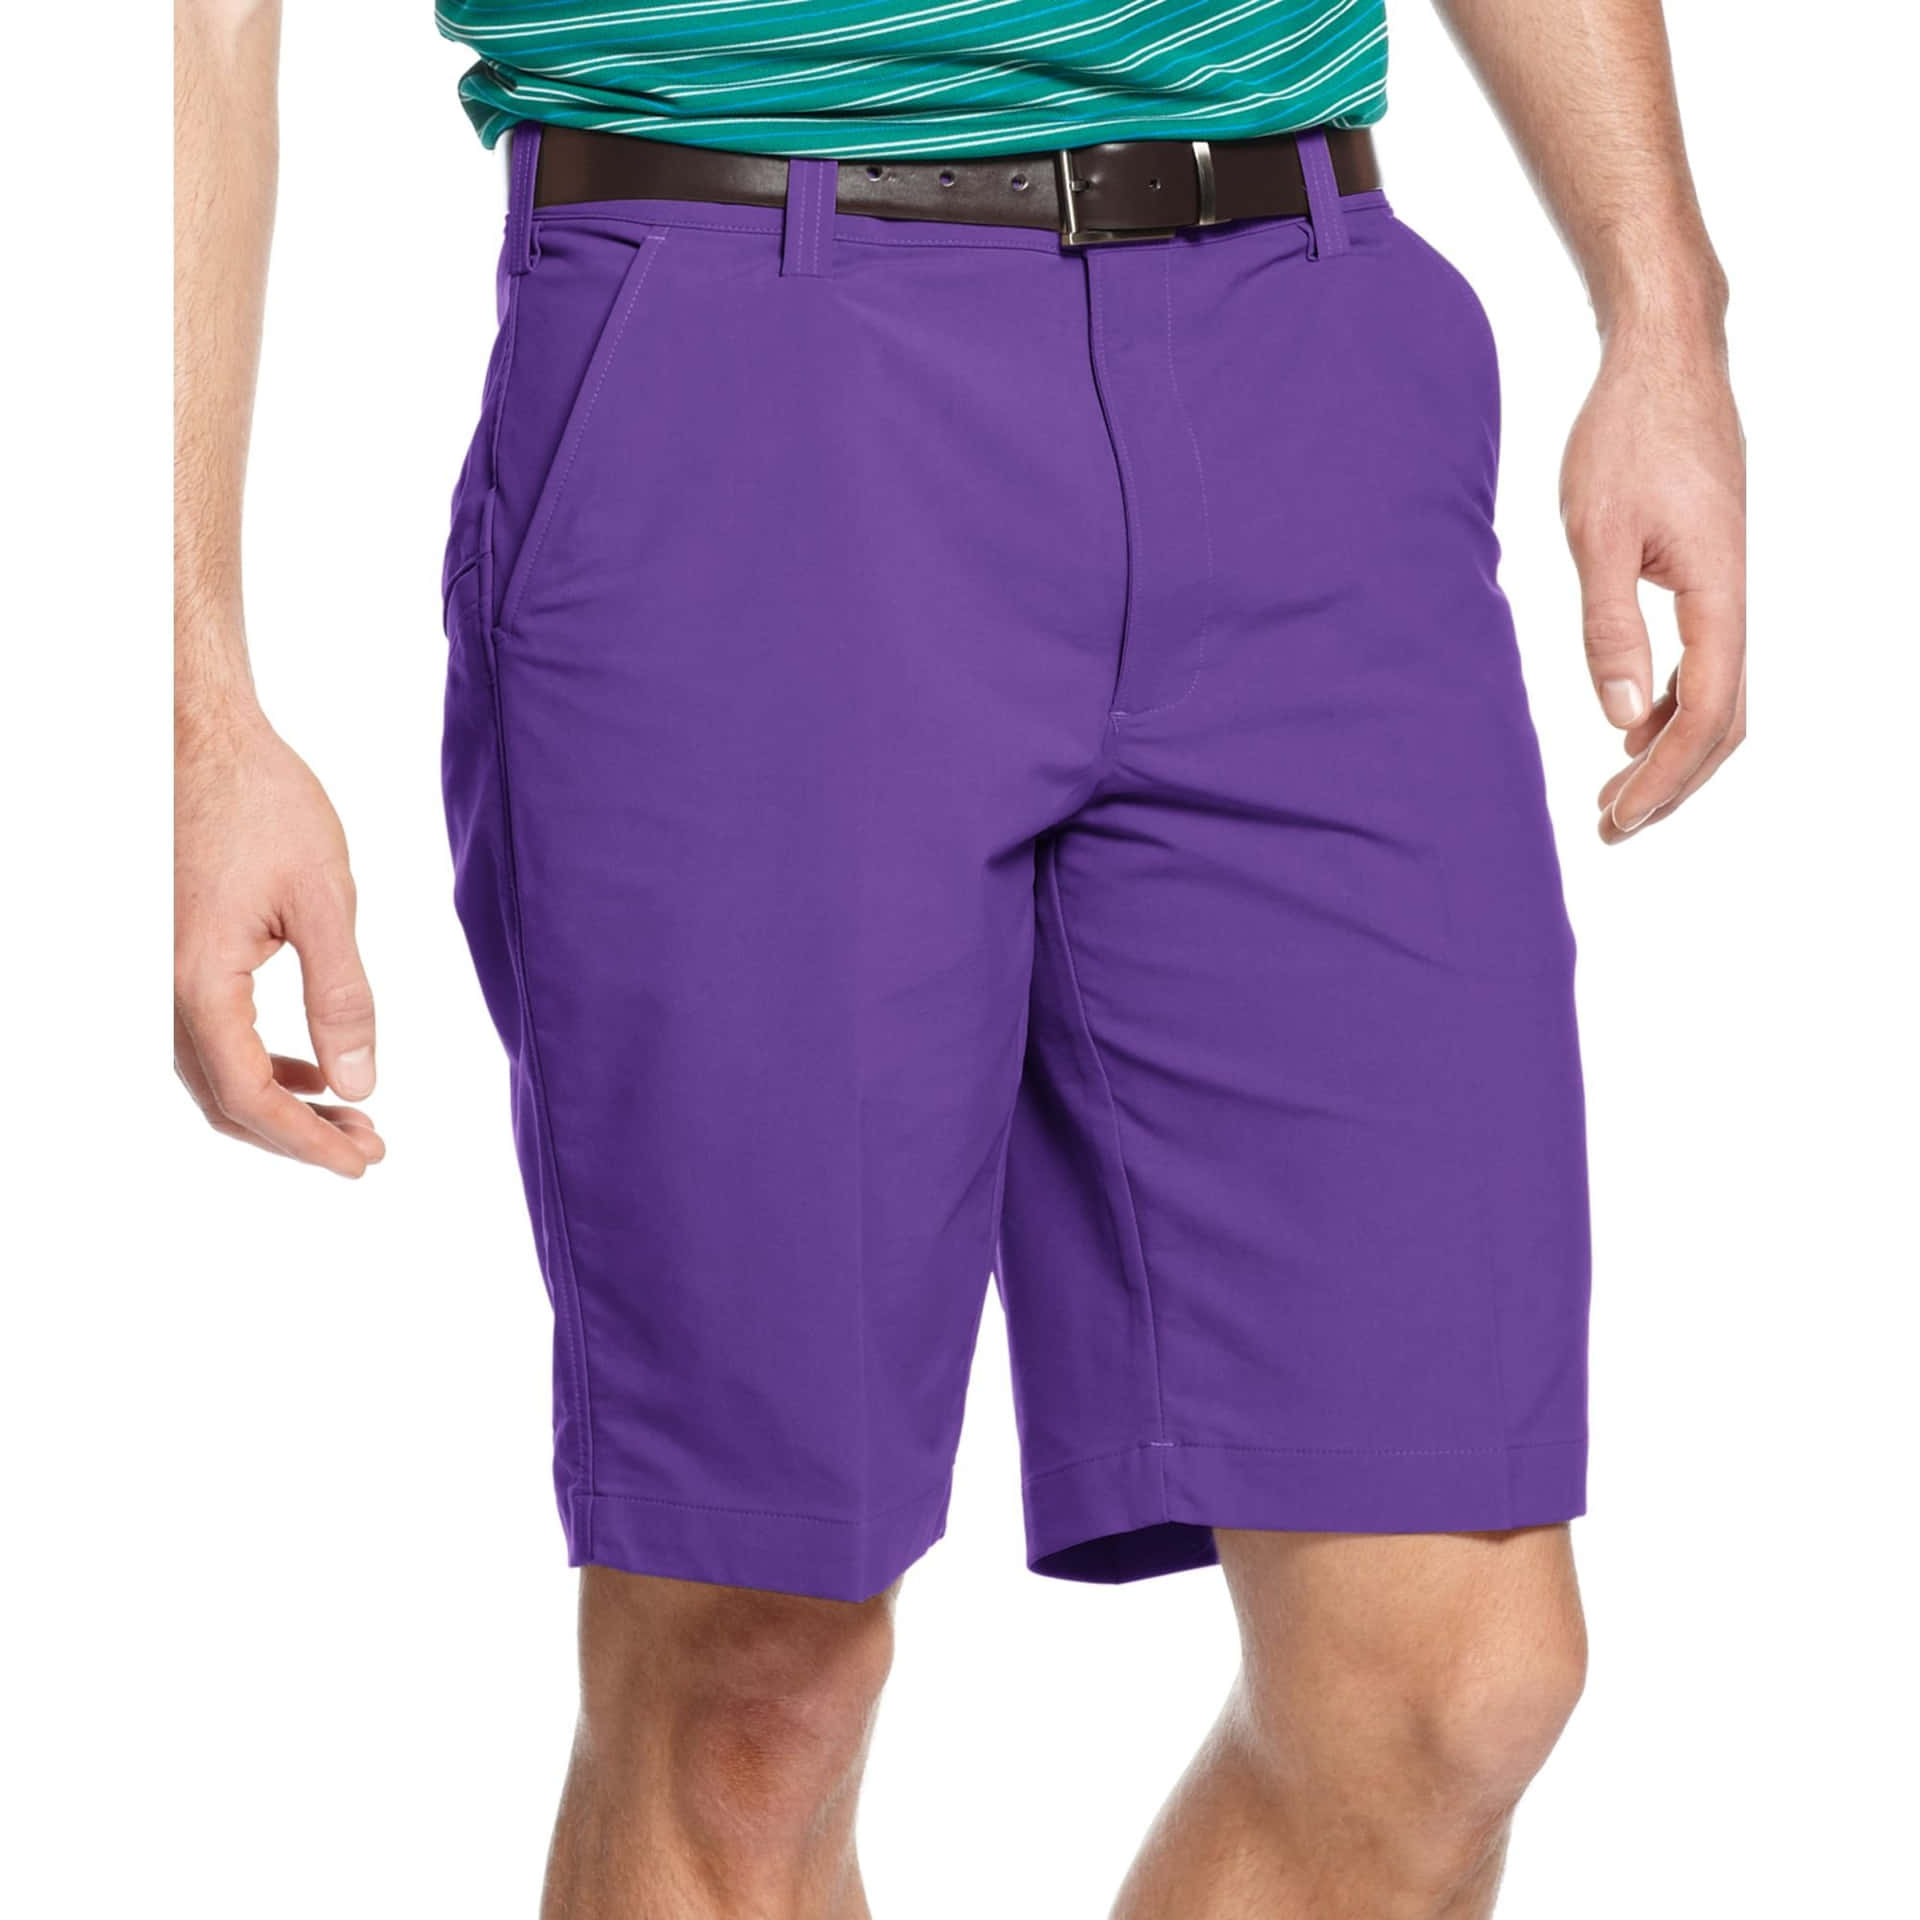 Muestratu Estilo Único Con Unos Shorts Especiales De Color Púrpura. Fondo de pantalla